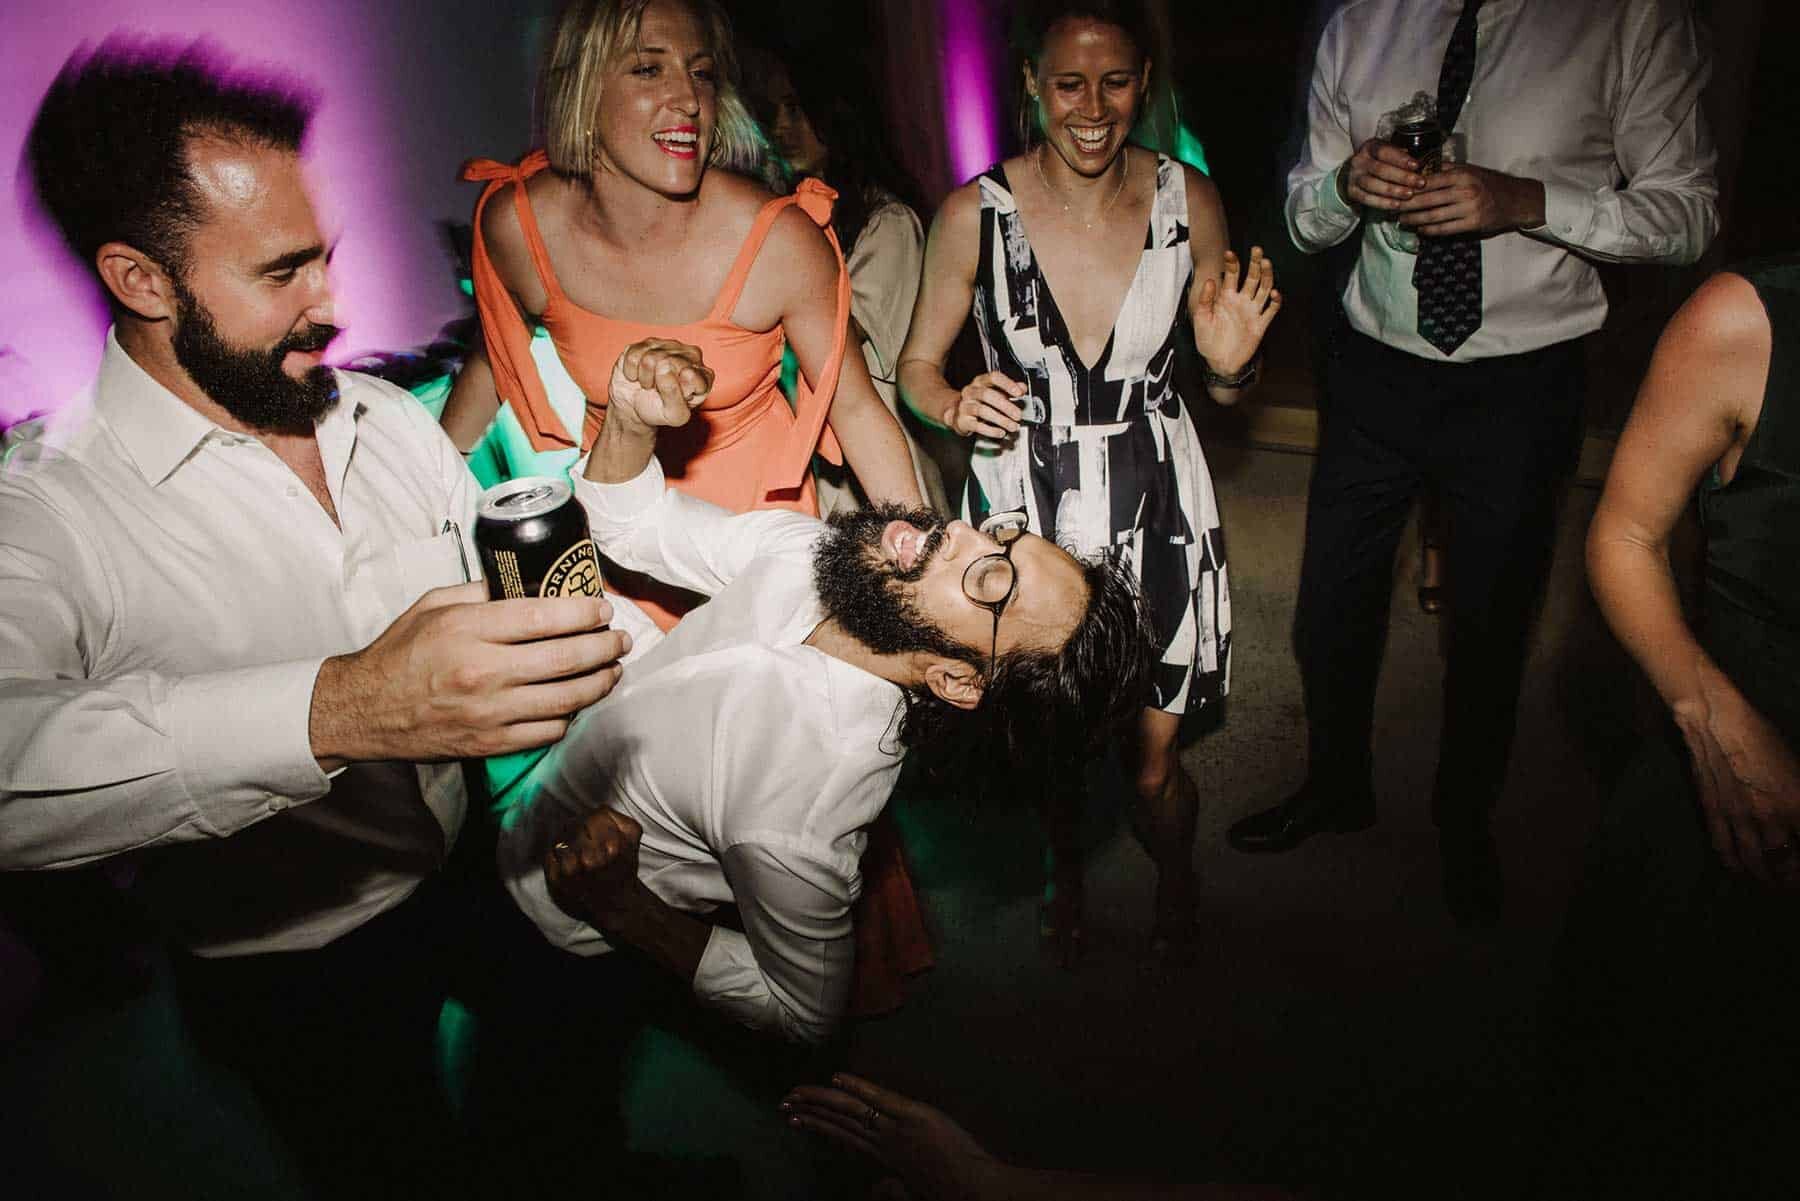 One More Song - fun Melbourne wedding DJ